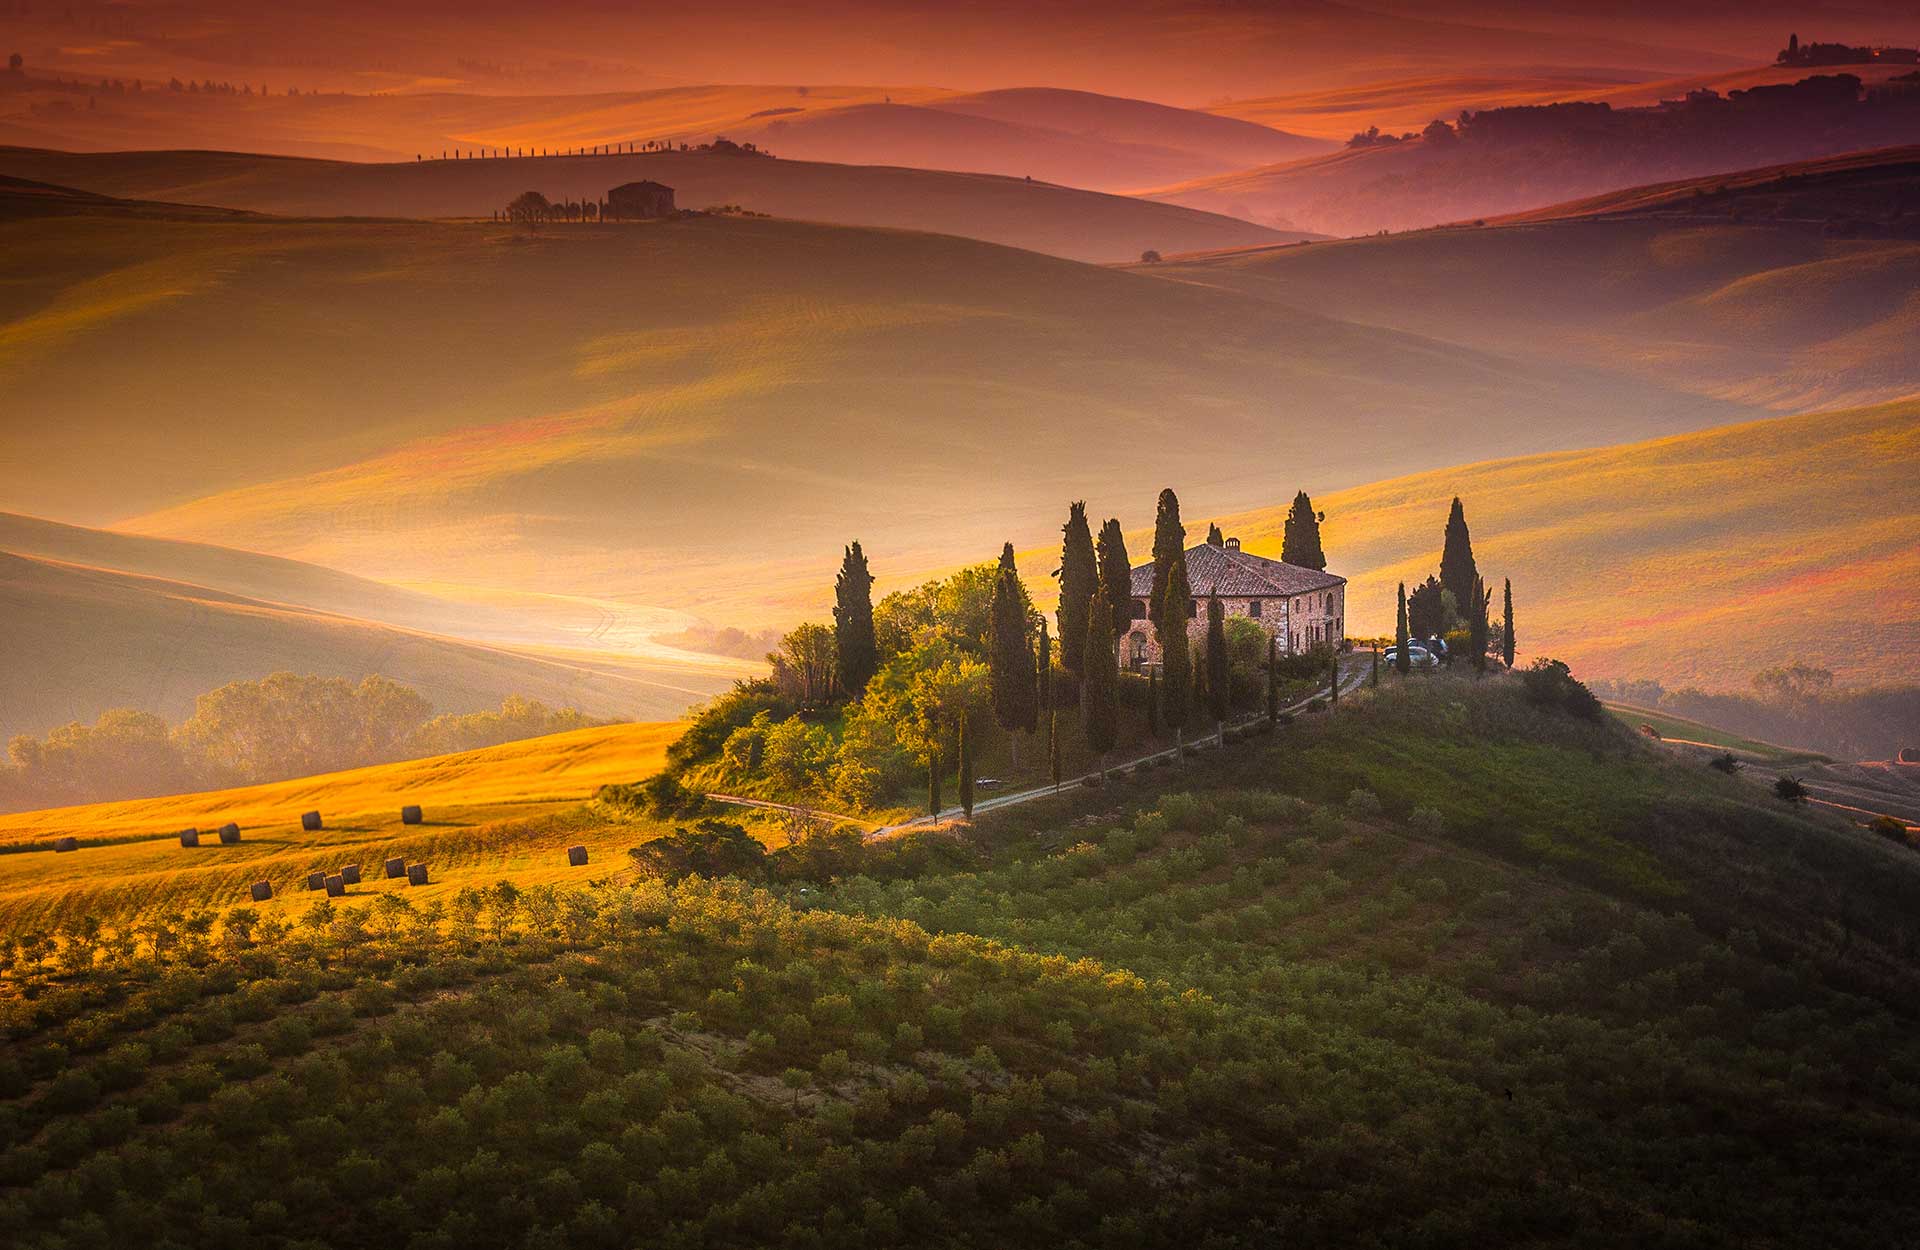 Vinprovning i Toscana